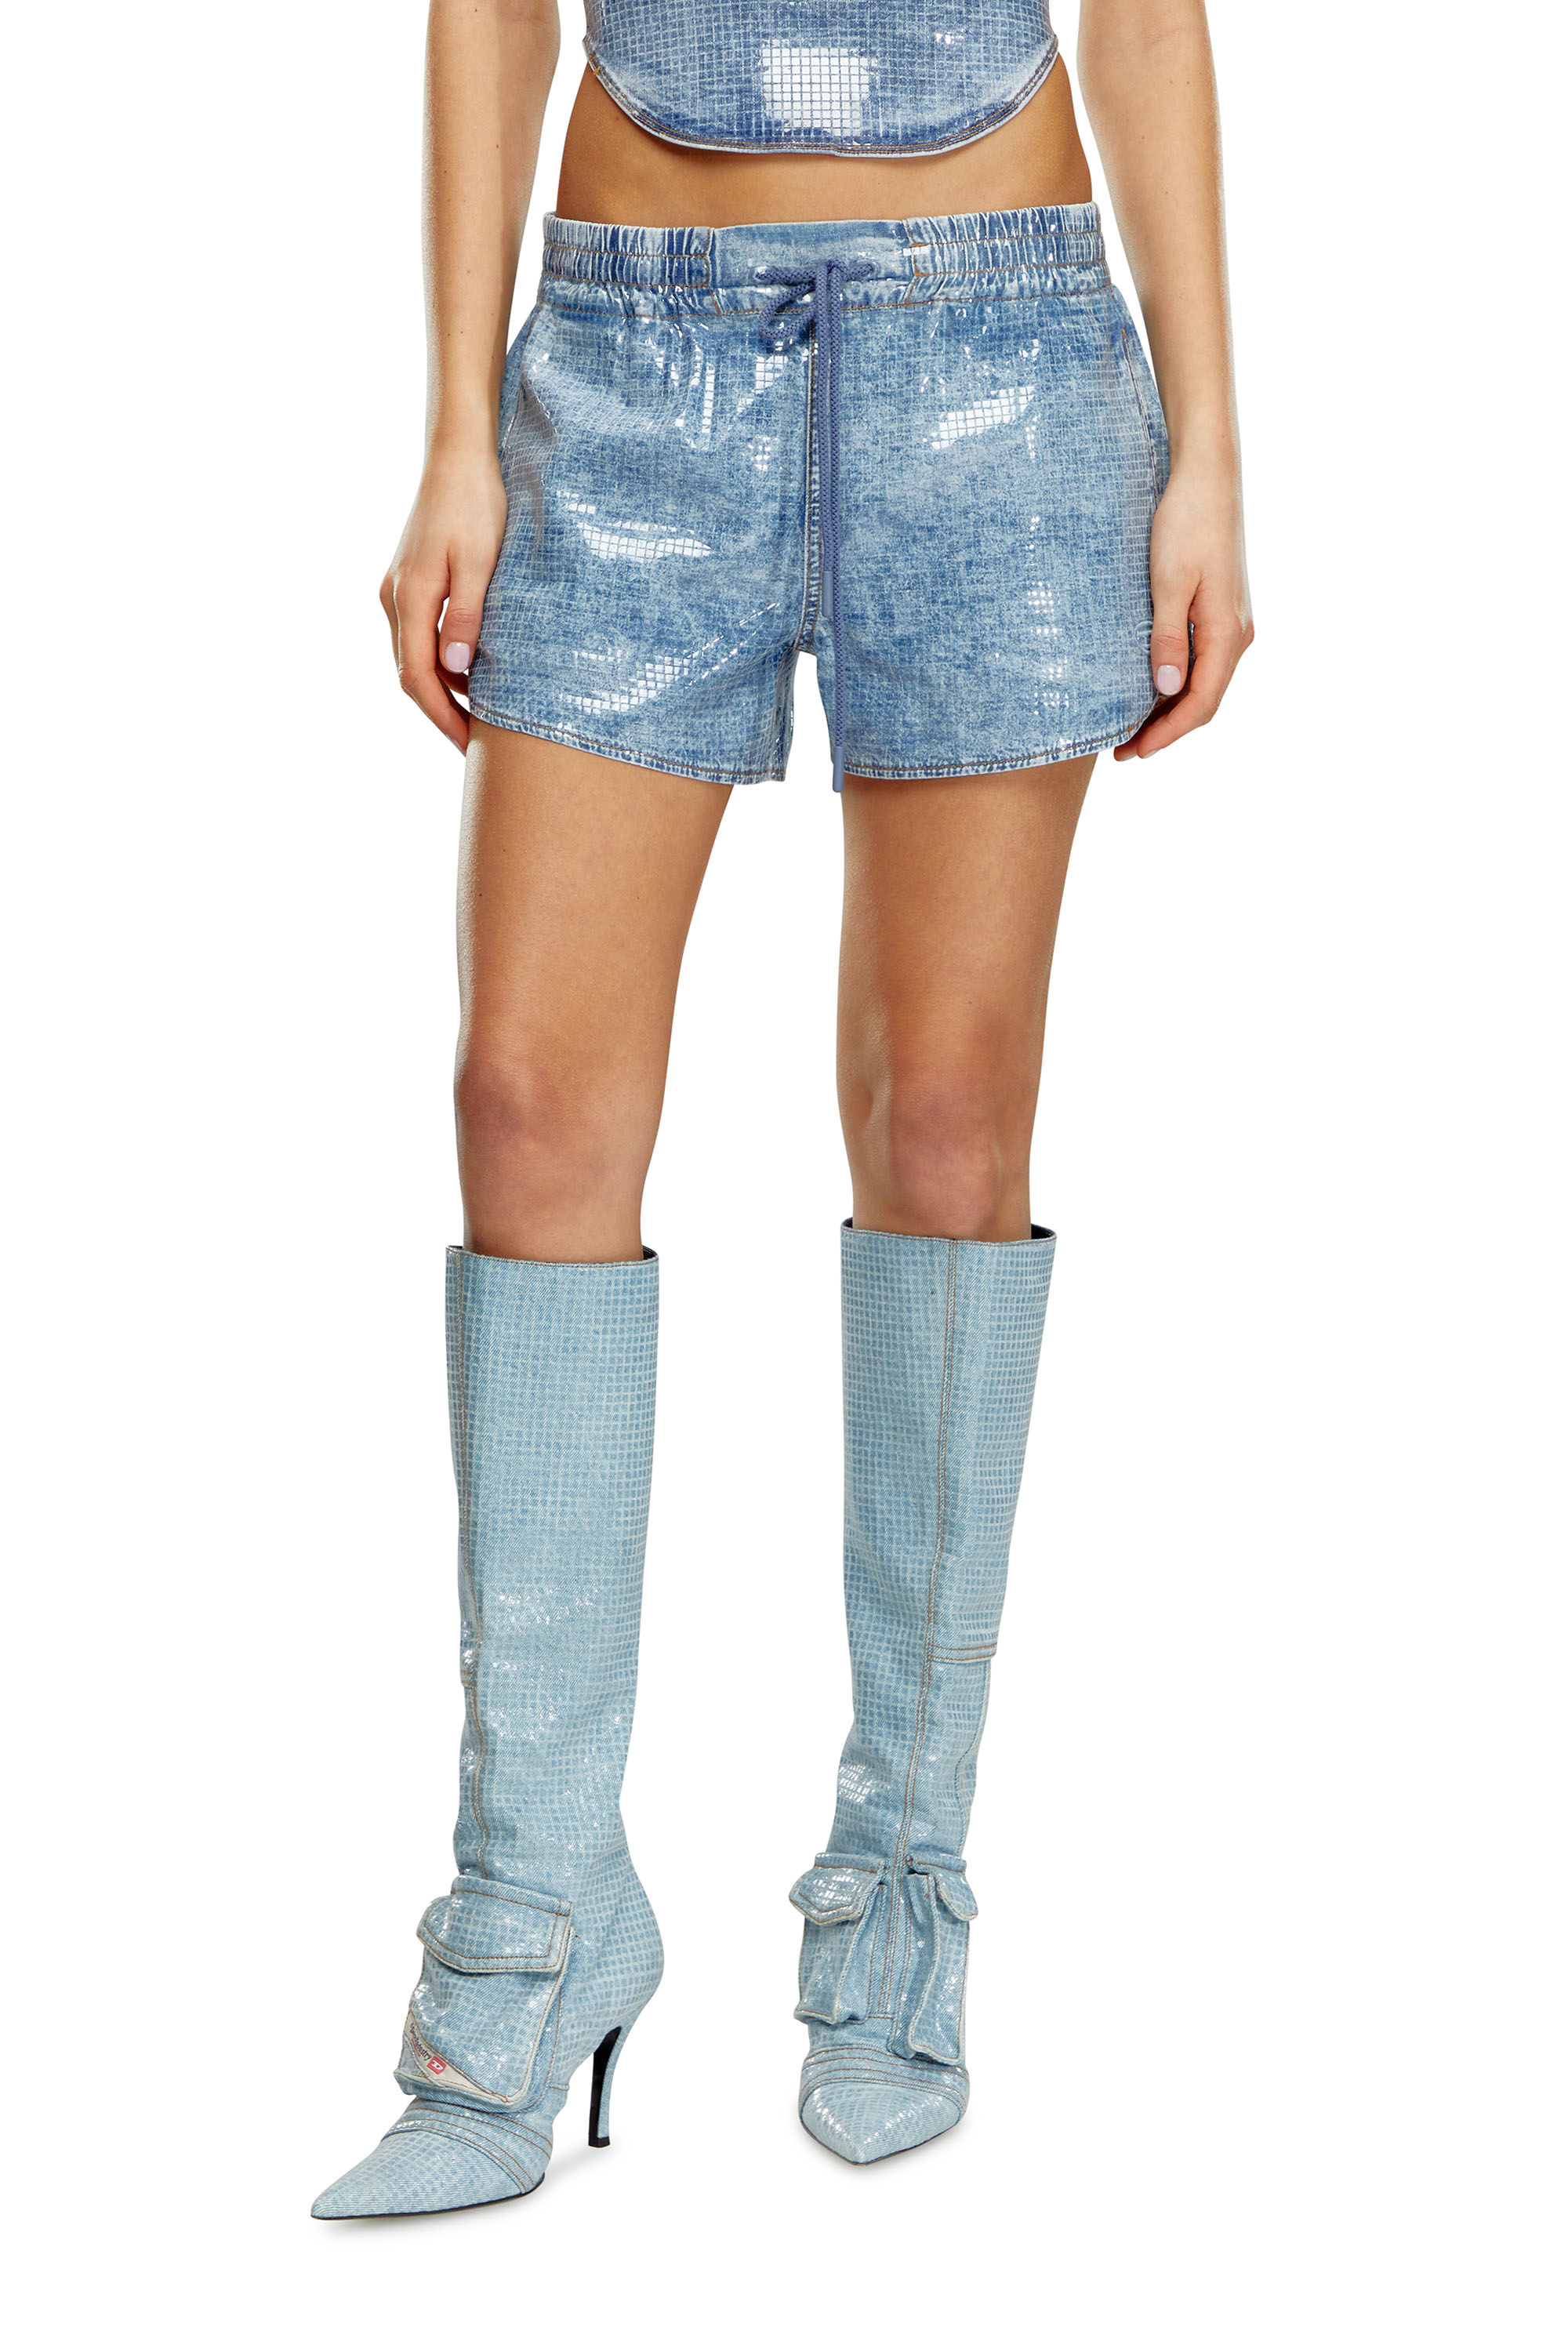 Diesel - Pantalones cortos deportivos en denim con lentejuelas - Shorts - Mujer - Azul marino